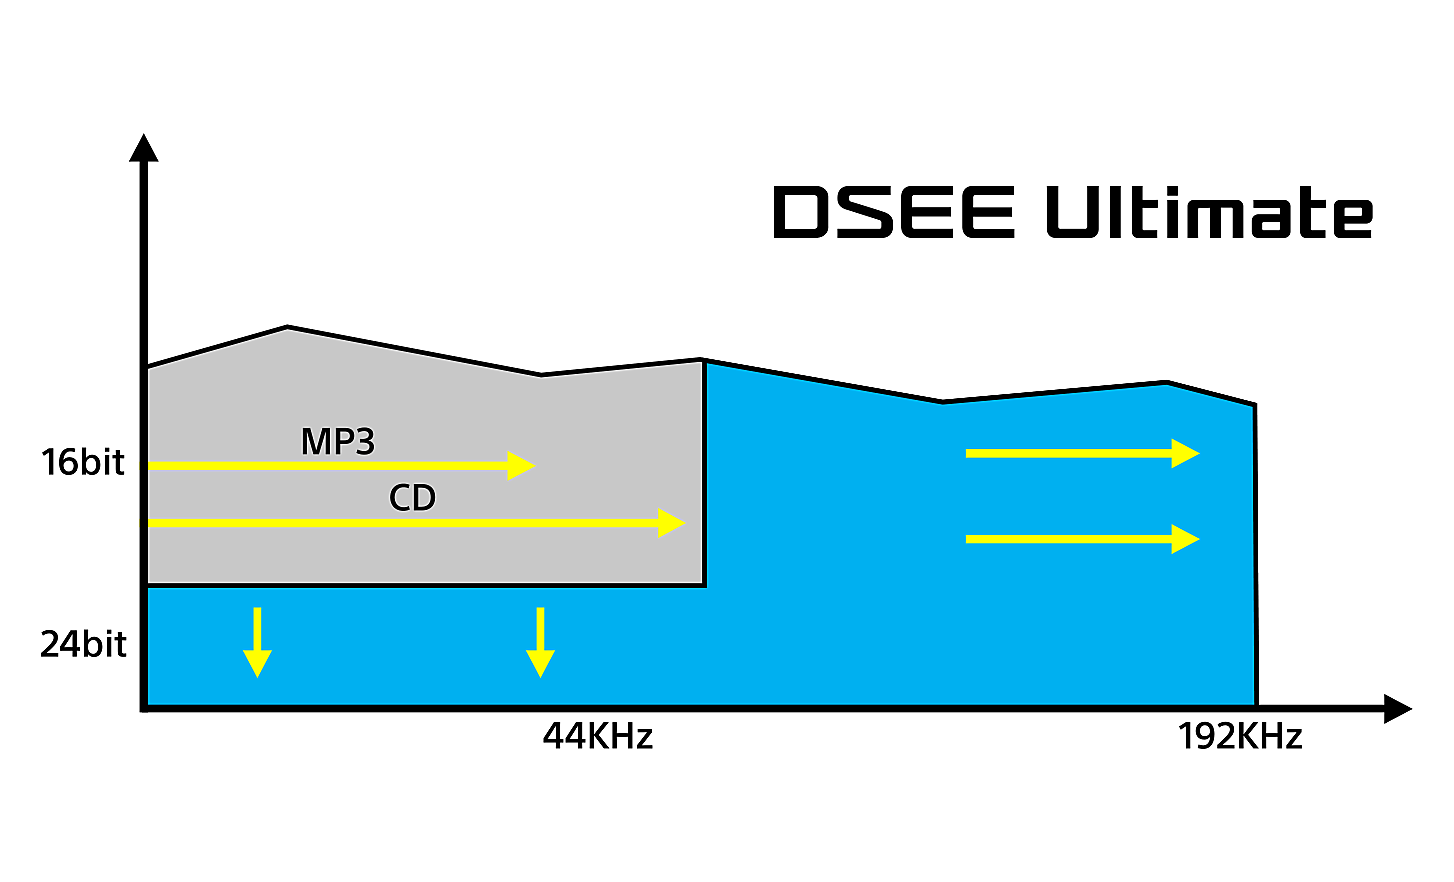 Graf som illustrerer effektene av DSEE Ultimate på digital musikk